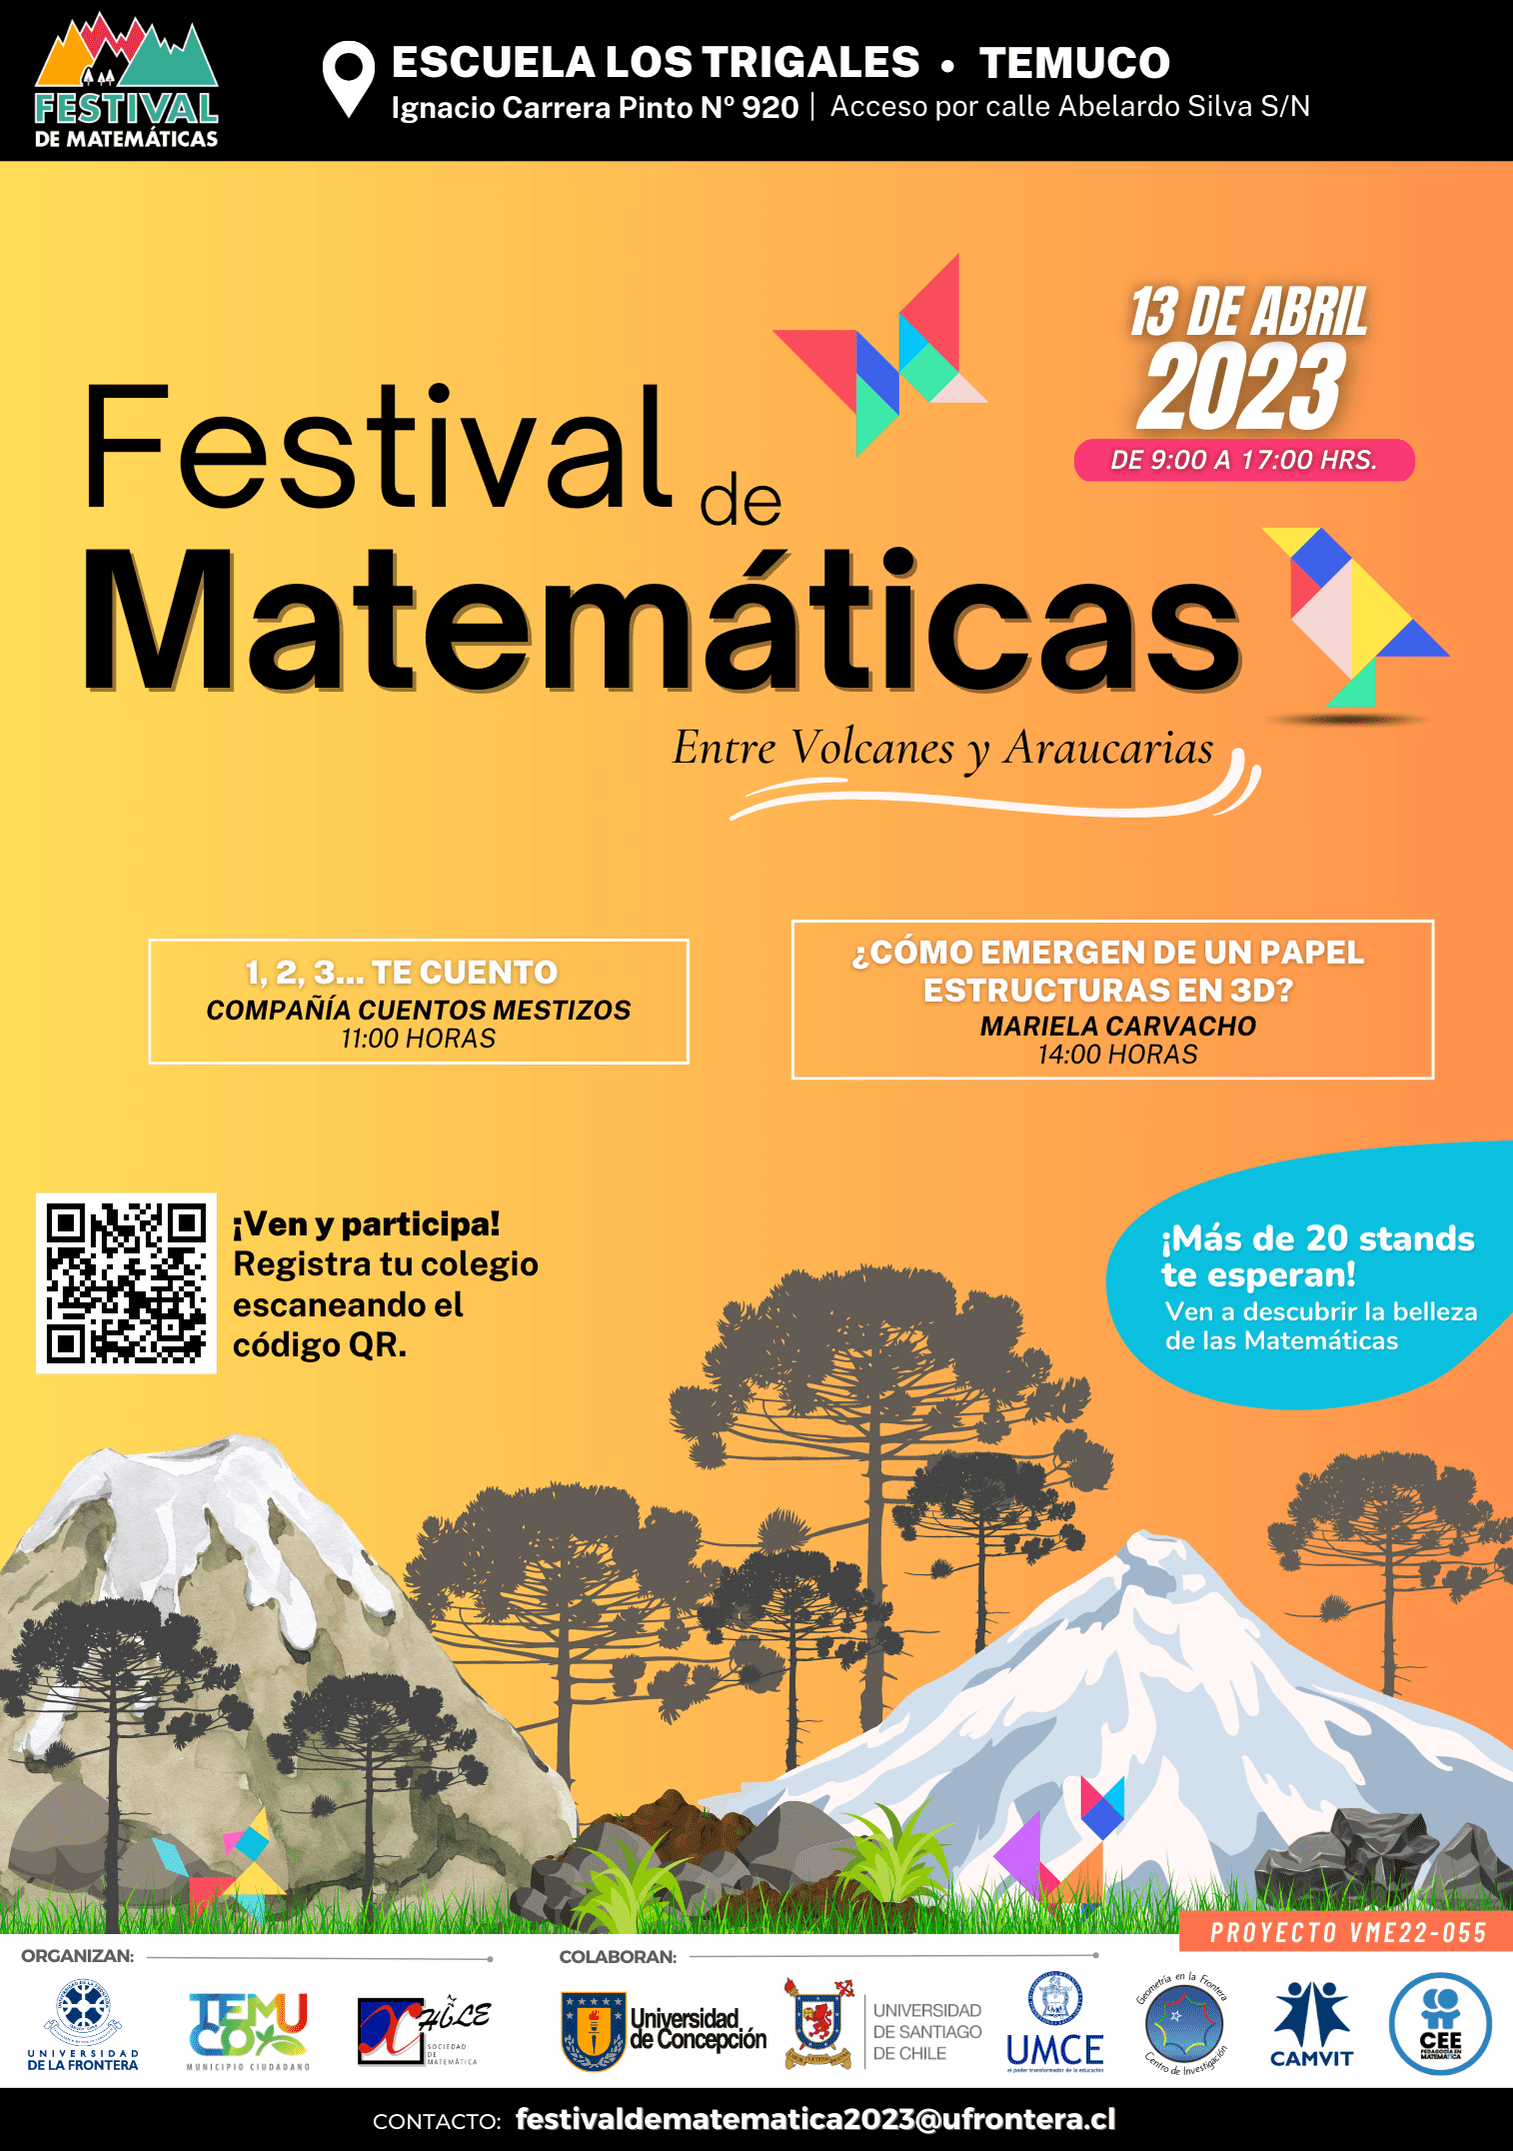 Afiche Festival de MatemáticasTemuco MARIELA PAZ CARVACHO BUSTAMANTE 1